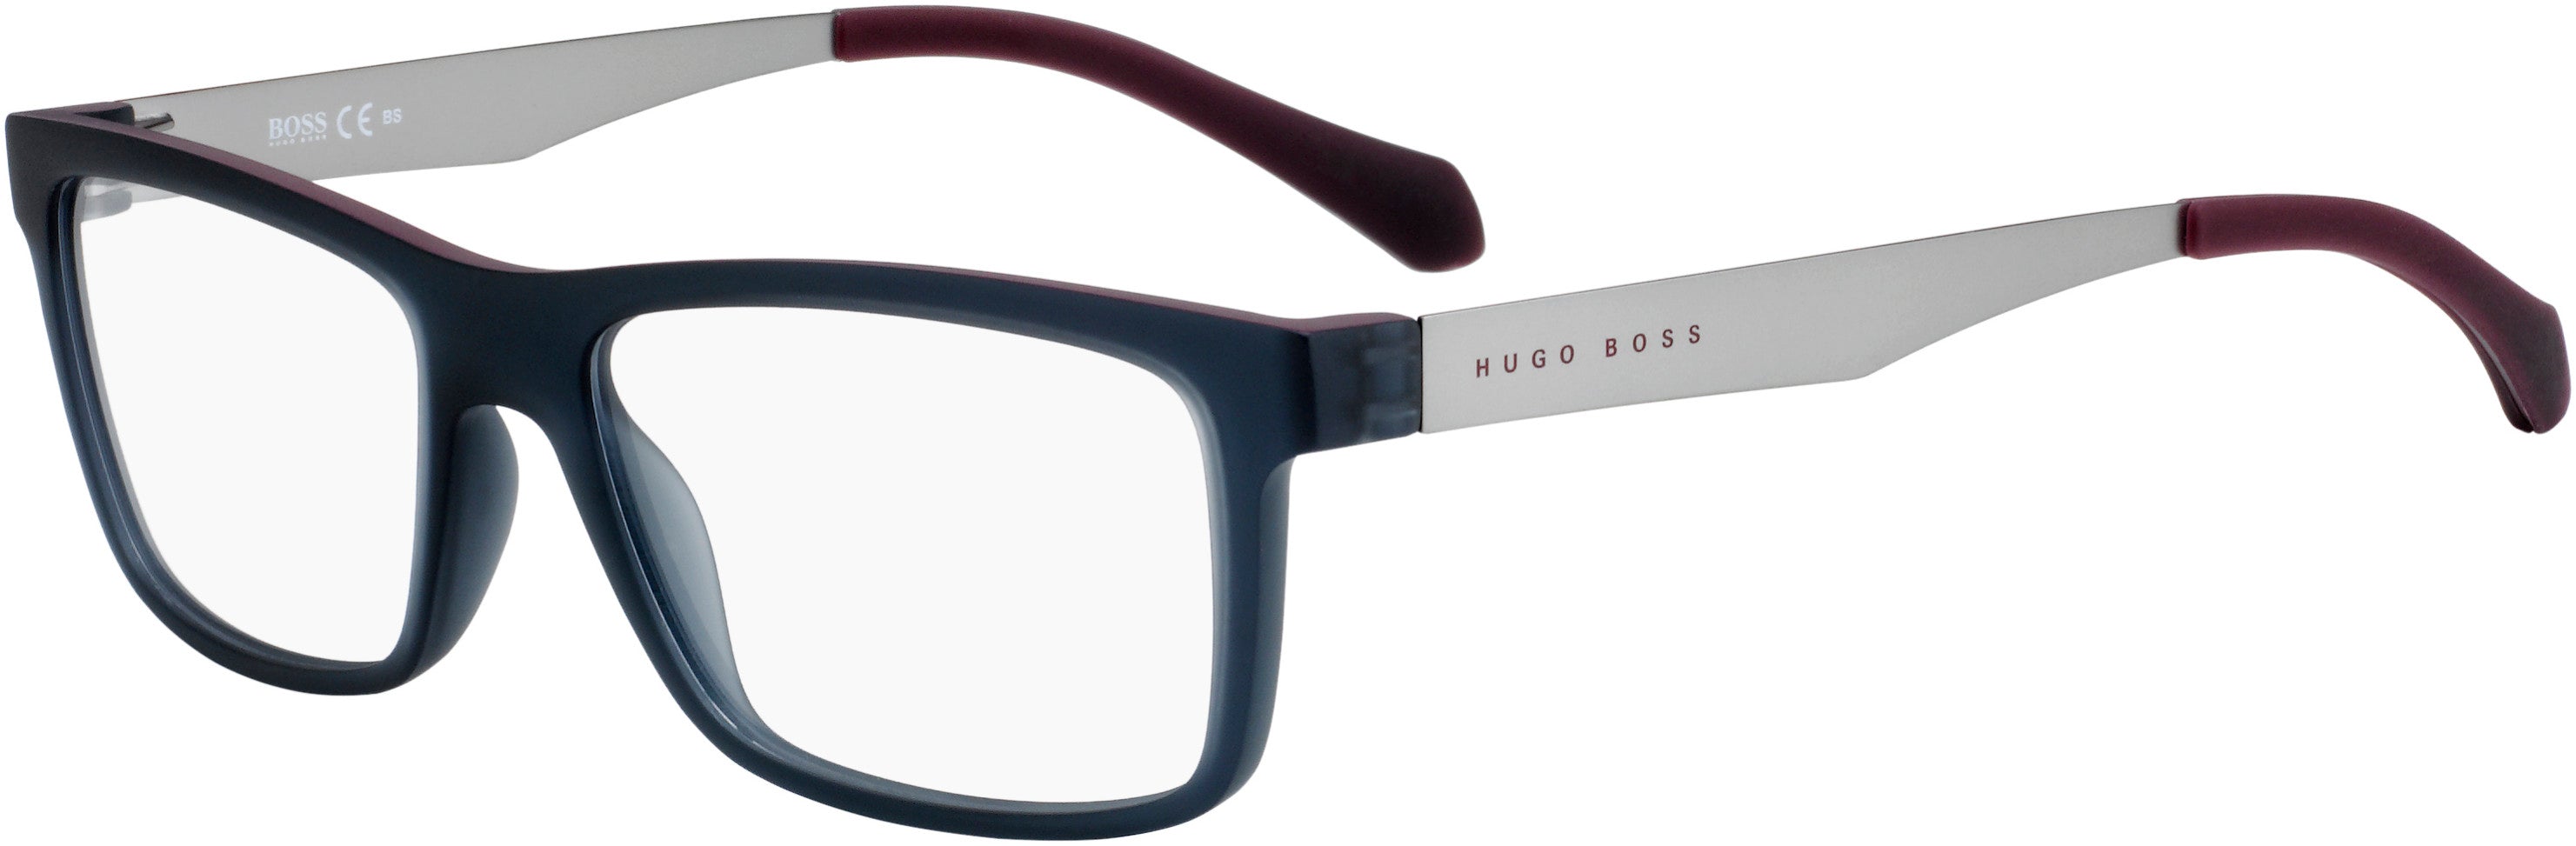 Boss (hub) Boss 0870 Rectangular Eyeglasses 005G-005G  Matte Gray Burgundy (00 Demo Lens)